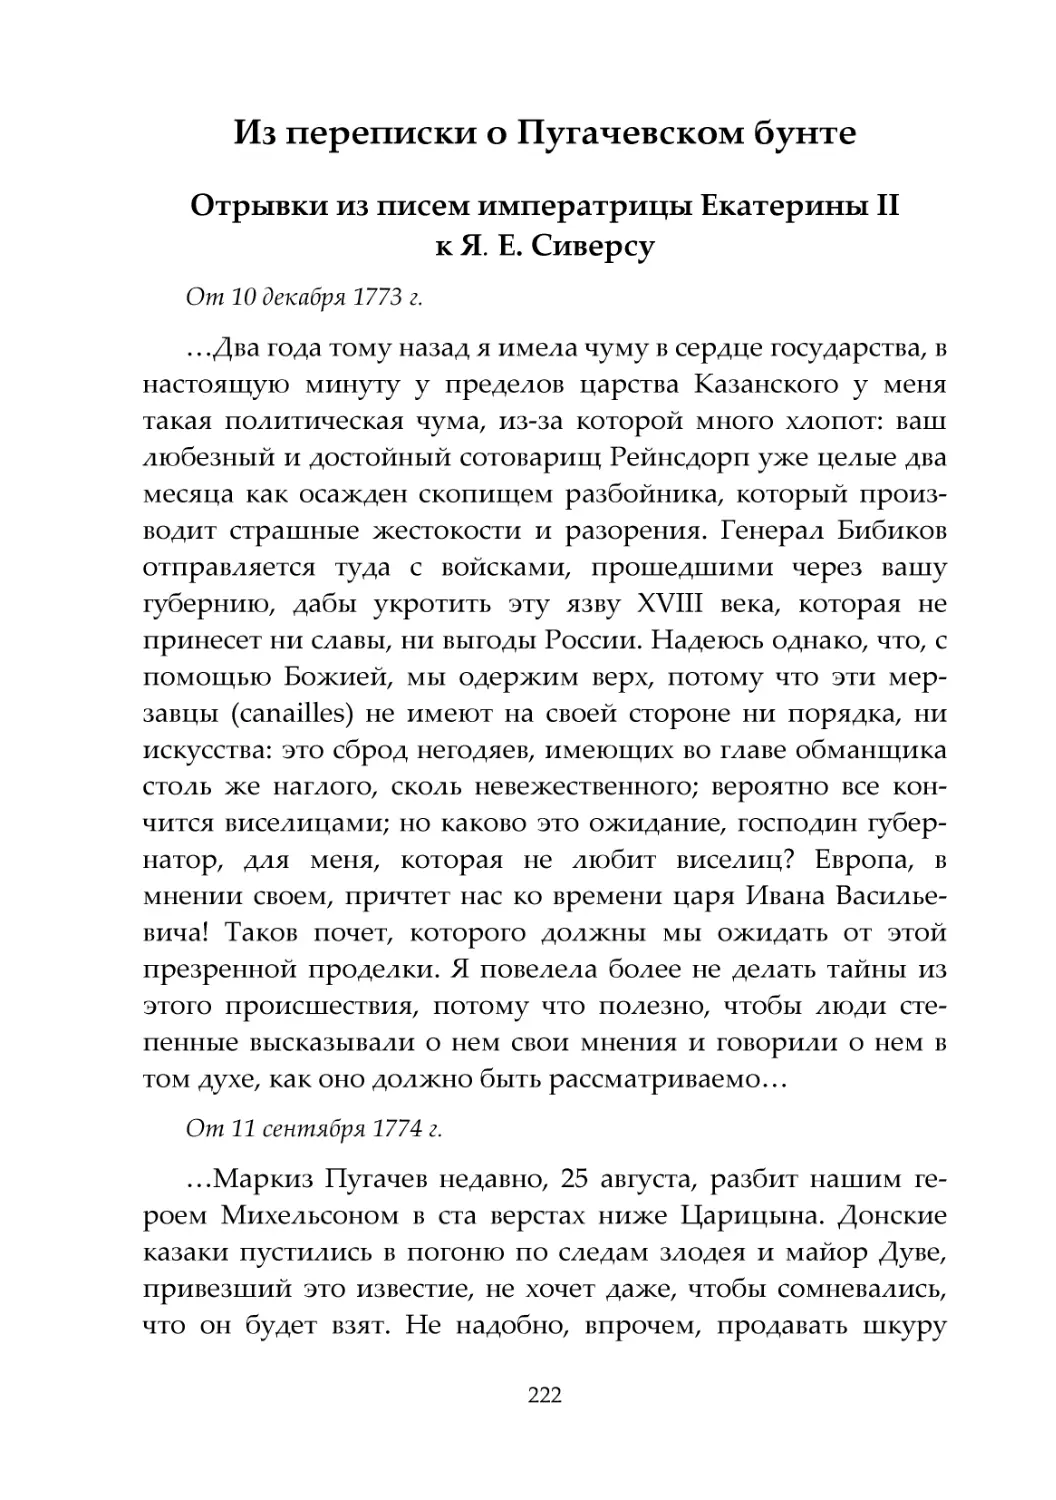 Из переписки о Пугачевском бунте
Отрывки из писем императрицы Екатерины II к Я. Е. Сиверсу